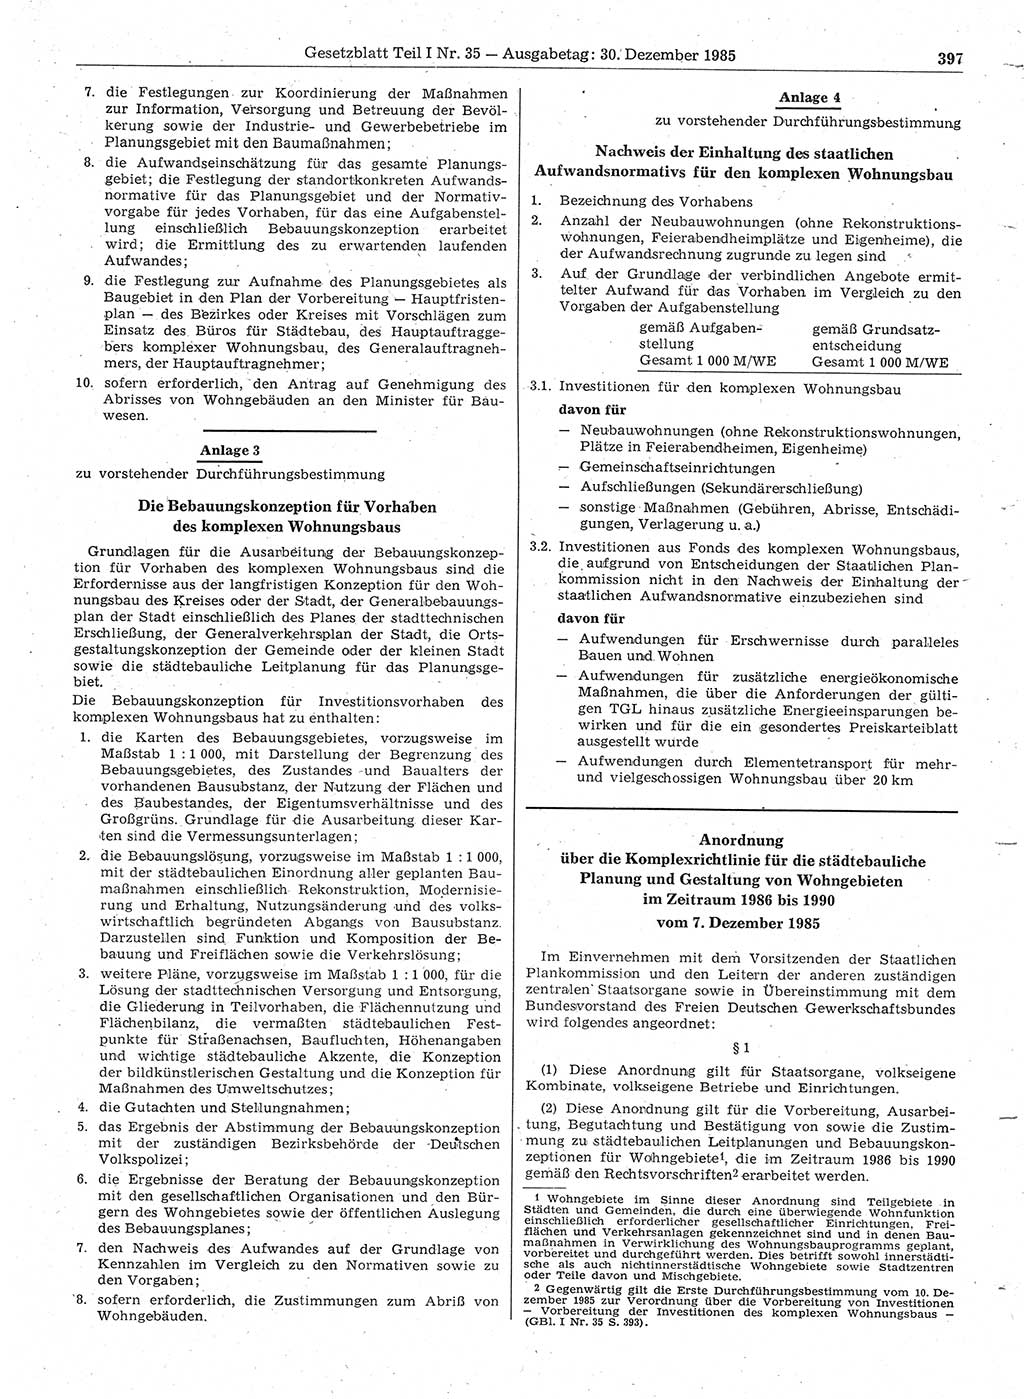 Gesetzblatt (GBl.) der Deutschen Demokratischen Republik (DDR) Teil Ⅰ 1985, Seite 397 (GBl. DDR Ⅰ 1985, S. 397)